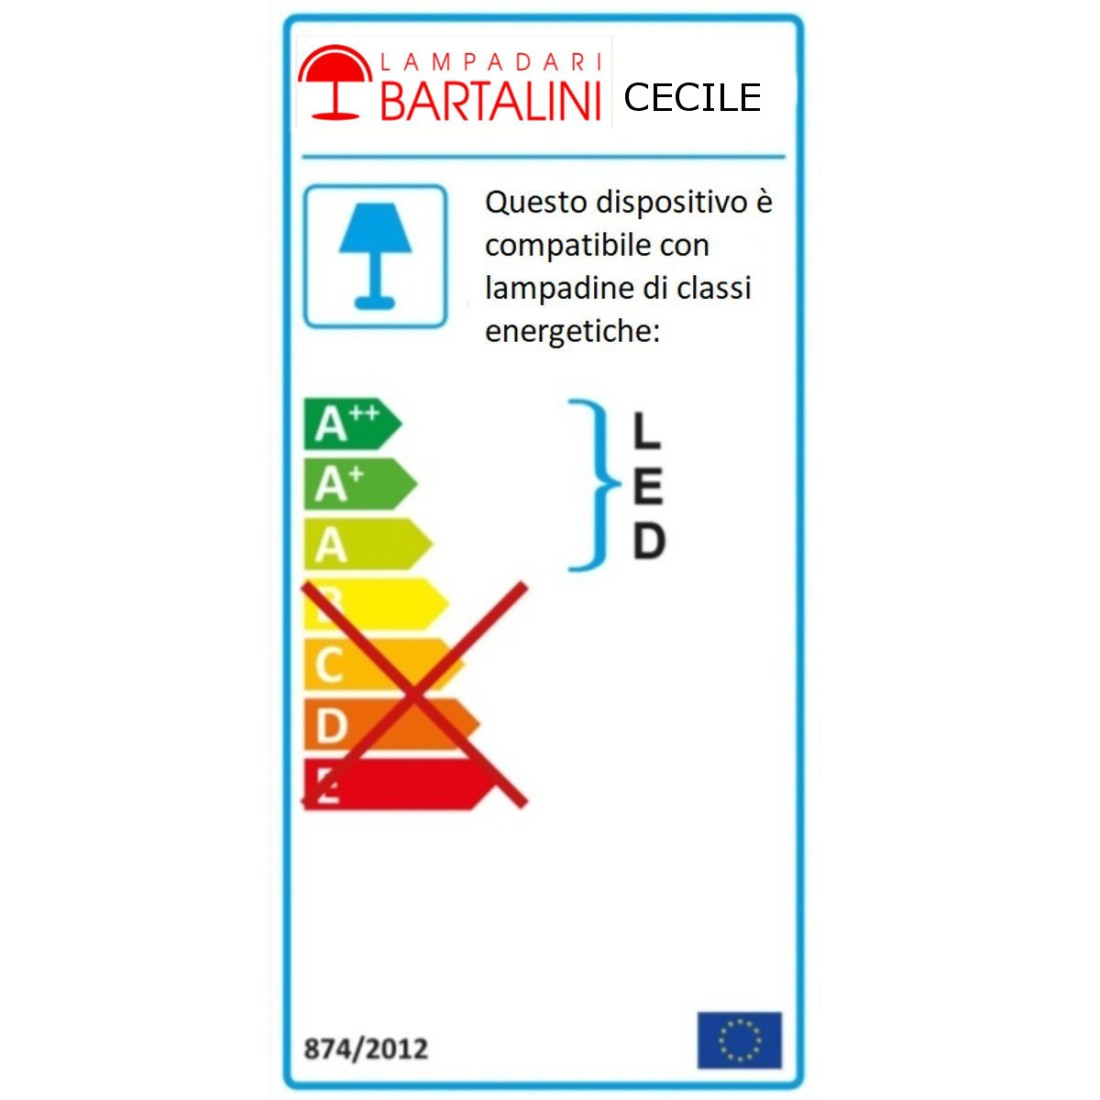 Abat-jour classica Lampadari Bartalini CECILE 1003 LT E14 E27 LED